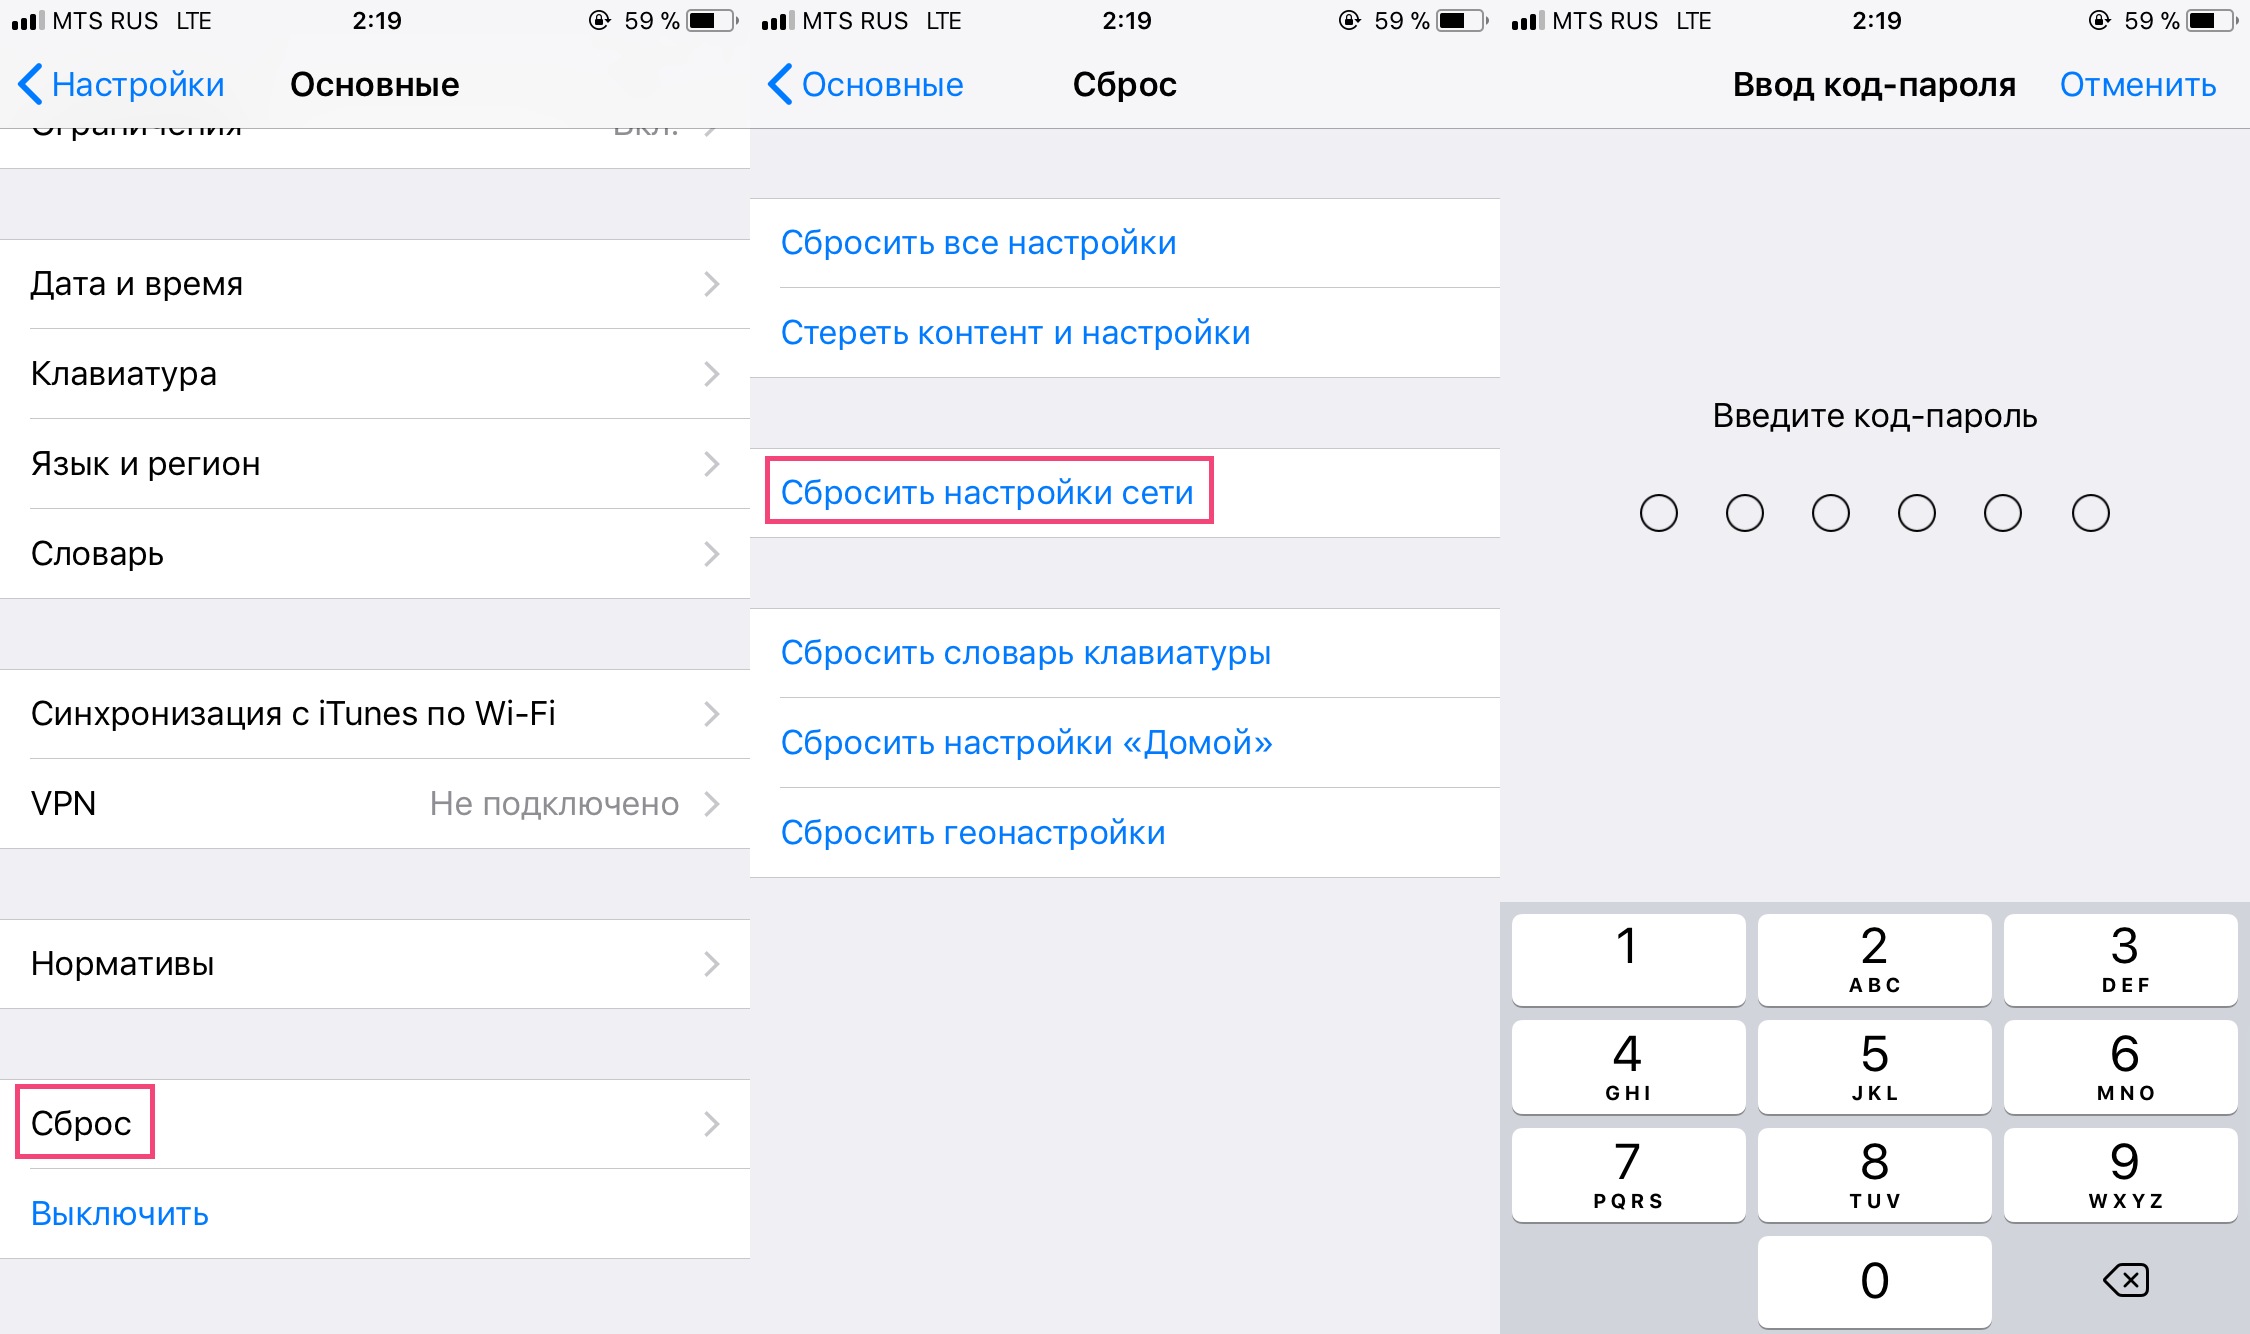 Как исправить проблему выхода из apple id, выделенную серым цветом на iphone и ipad - tonv